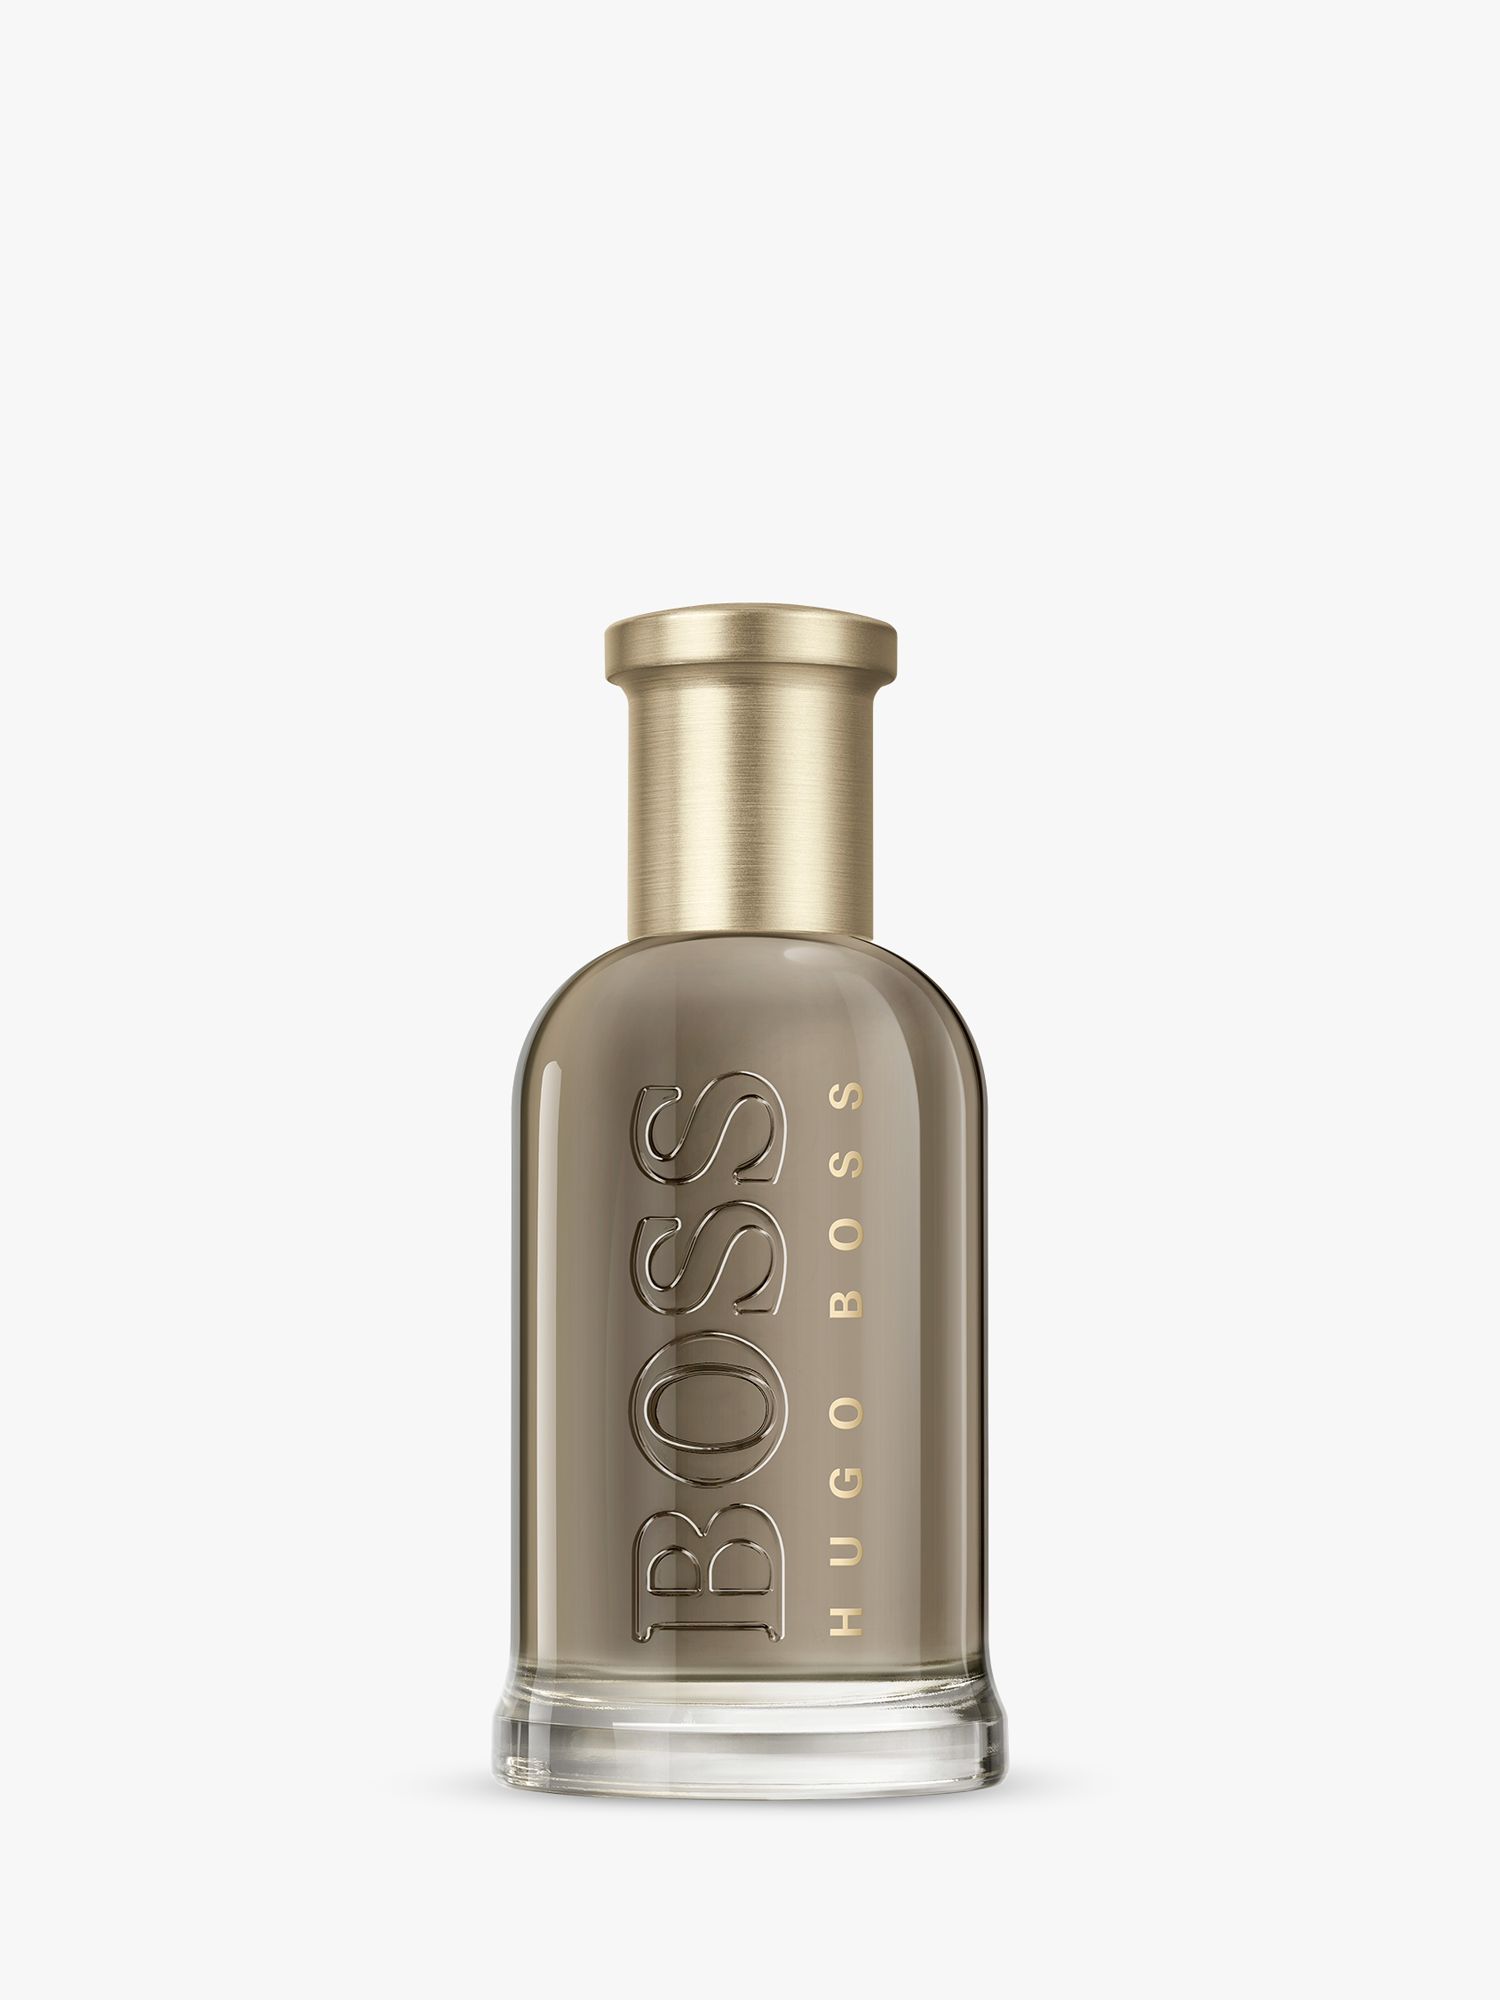 HUGO BOSS BOSS Bottled Eau de Parfum, 50ml